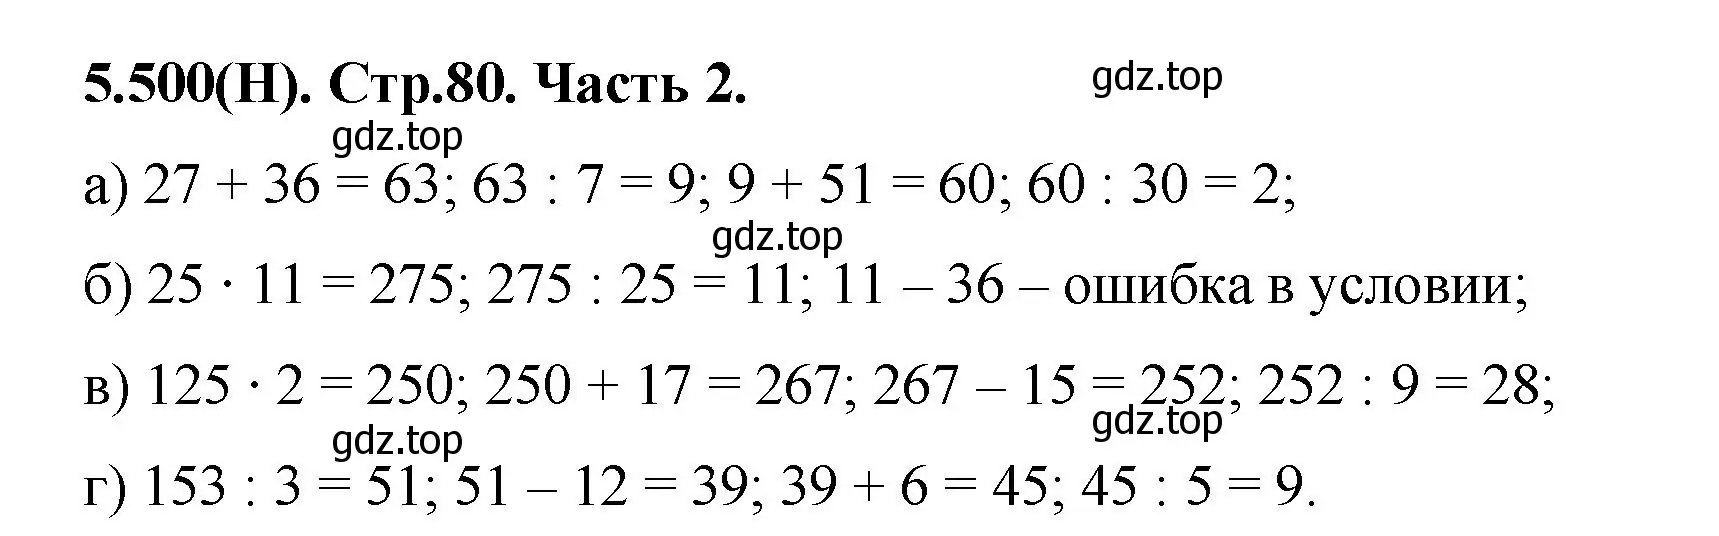 Решение номер 5.500 (страница 80) гдз по математике 5 класс Виленкин, Жохов, учебник 2 часть